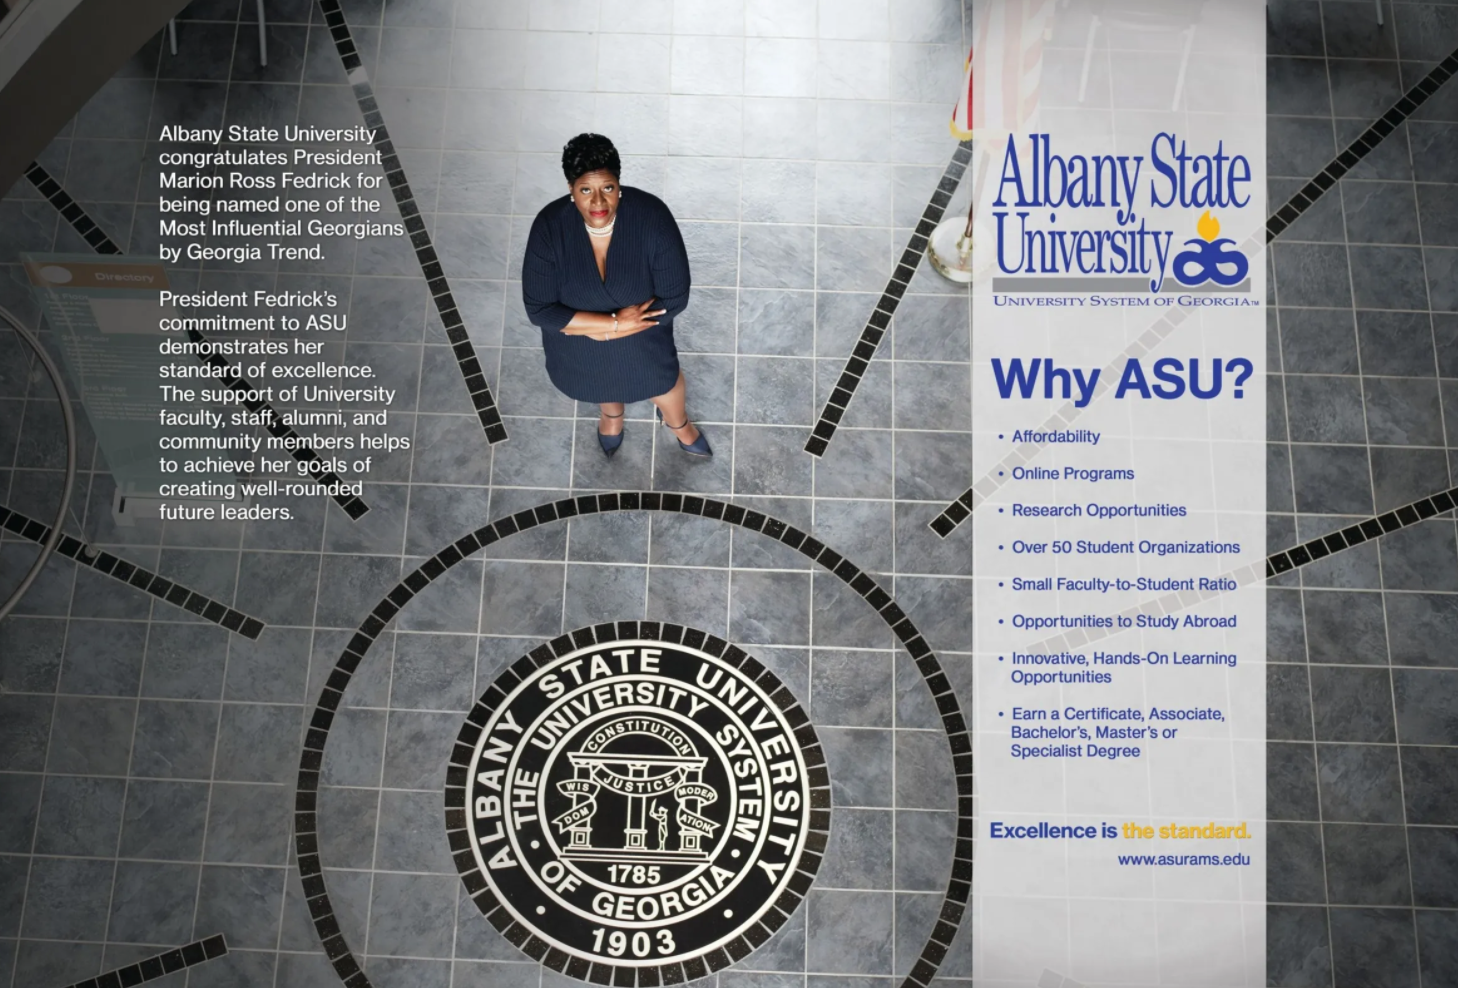 Why ASU President Fedrick